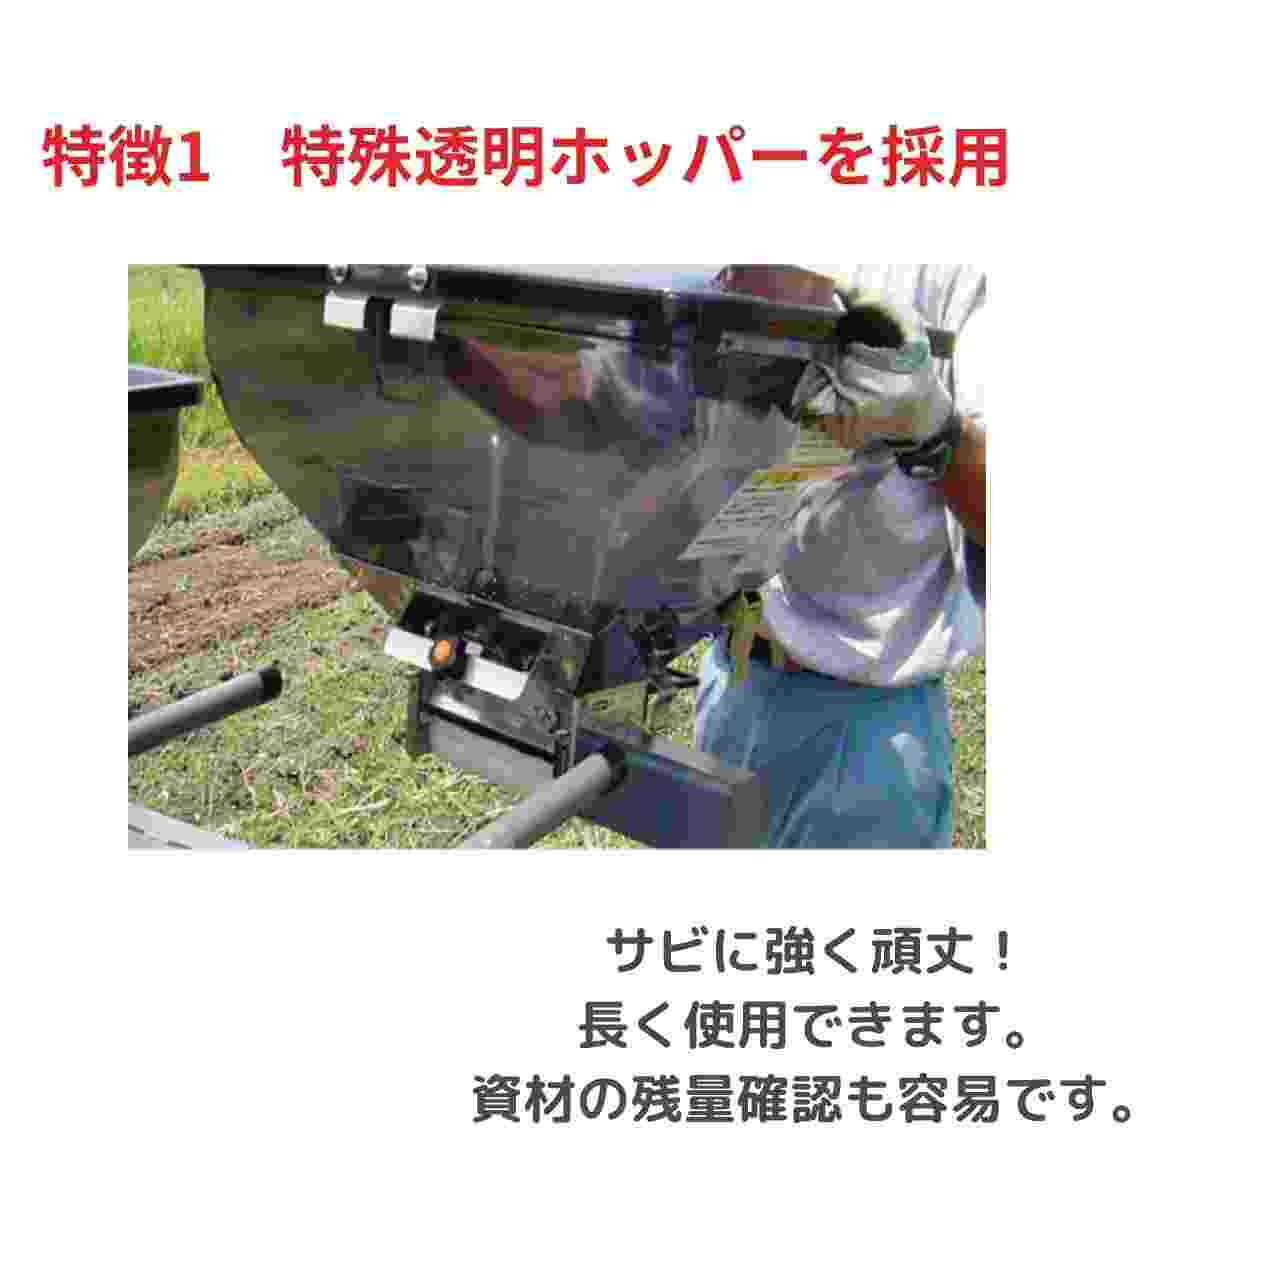 トラクタ用施肥機 サンソワーVシリーズ ジョーニシ V-R05N｜農機具通販ノウキナビ